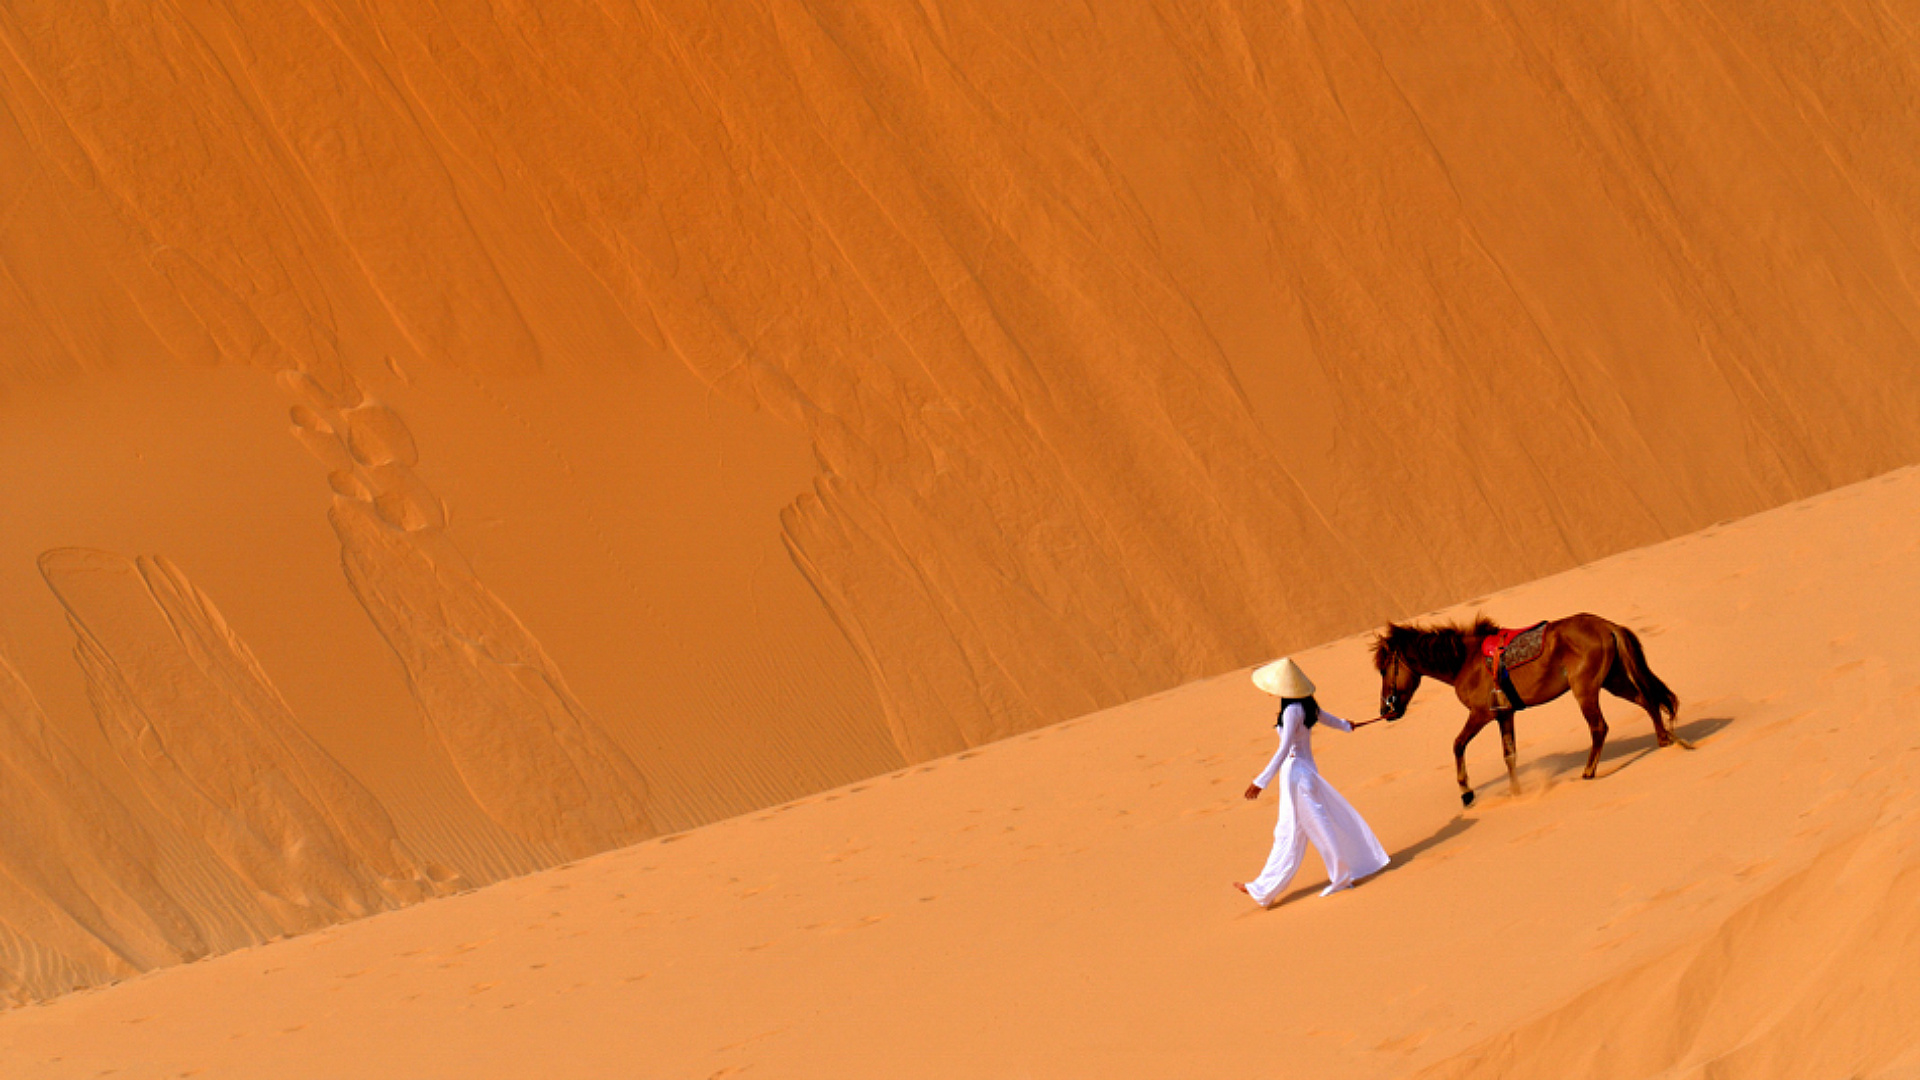 Караван гремел. Девушка на лошади в пустыне. Лошадь в пустыне. Караван в пустыне. Девушка и Караван в пустыне.